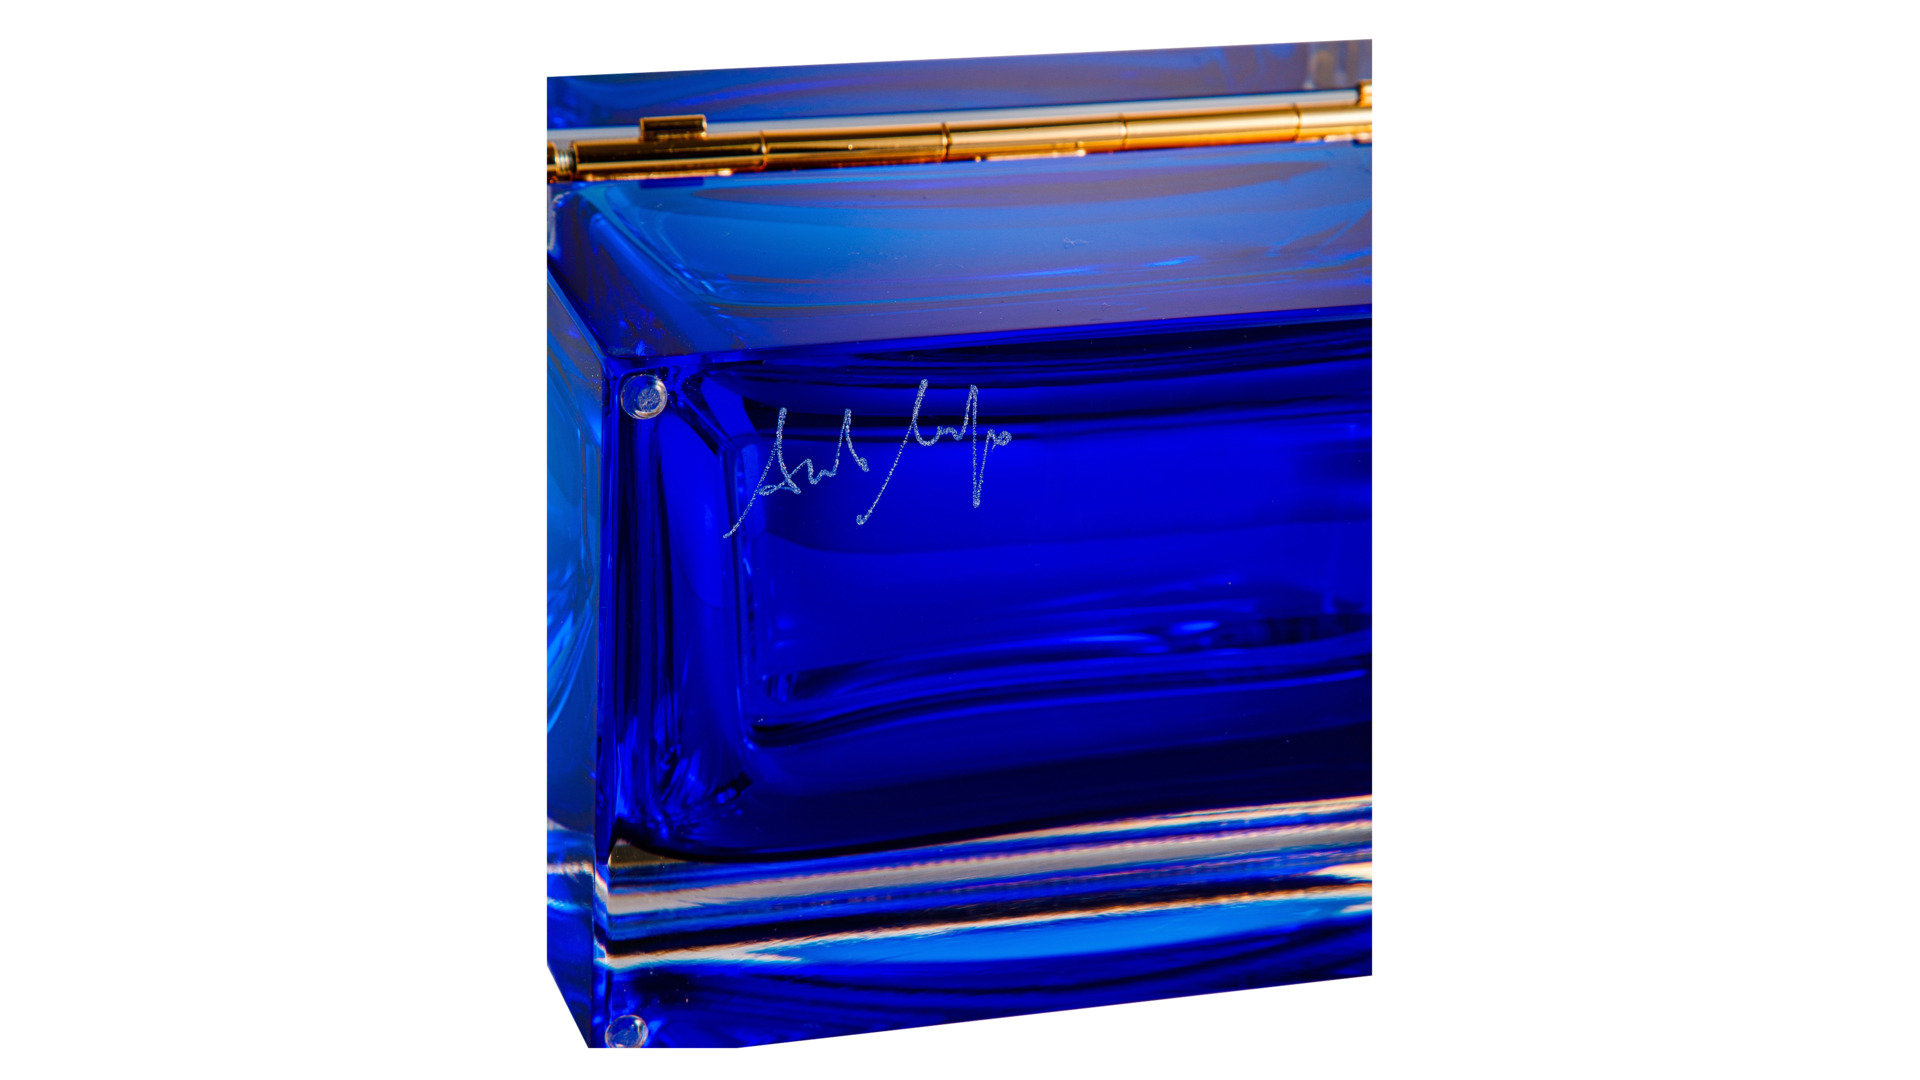 Шкатулка для ювелирных украшений Alessandro Mandruzzato 18х12х11 см, стекло муранское, кобальтовая